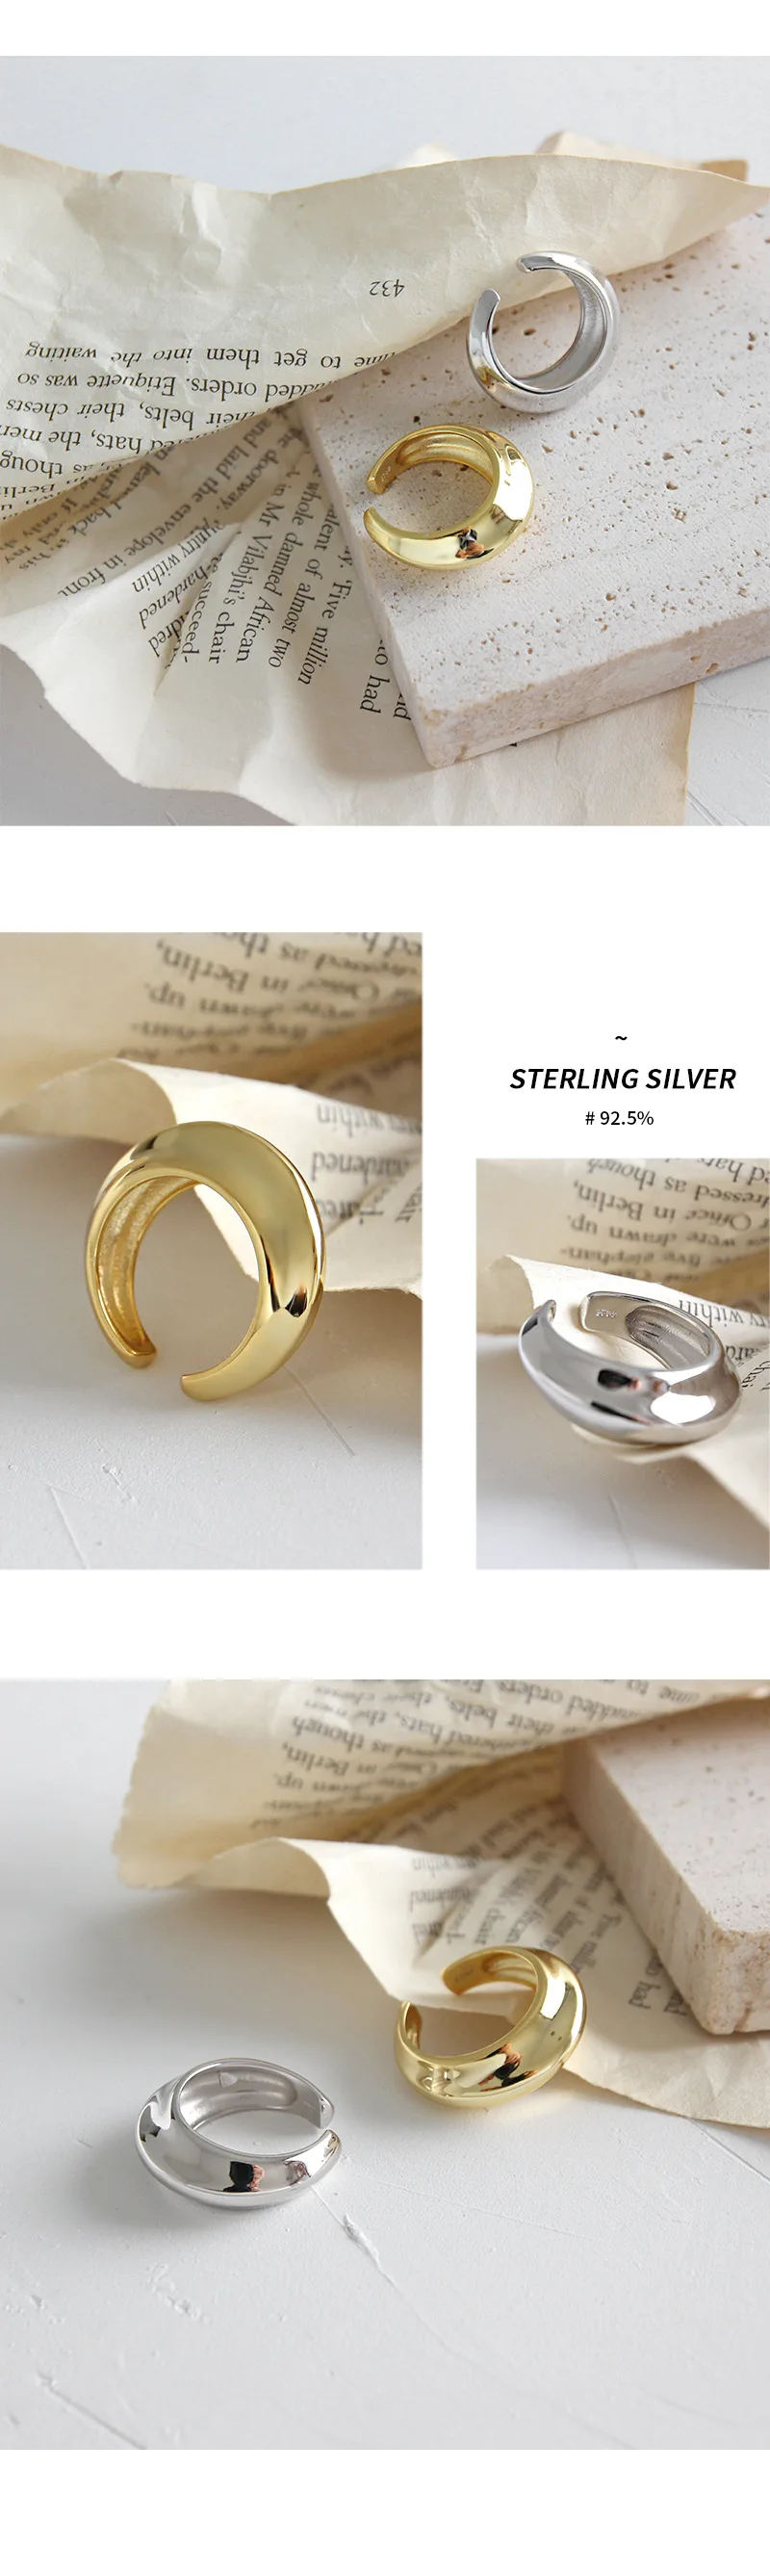 F.I.N.S подлинные 925 пробы серебряные кольца вогнутые выпуклые изогнутые поверхности широкие регулируемые кольца на палец Золотое серебро 925 ювелирные изделия